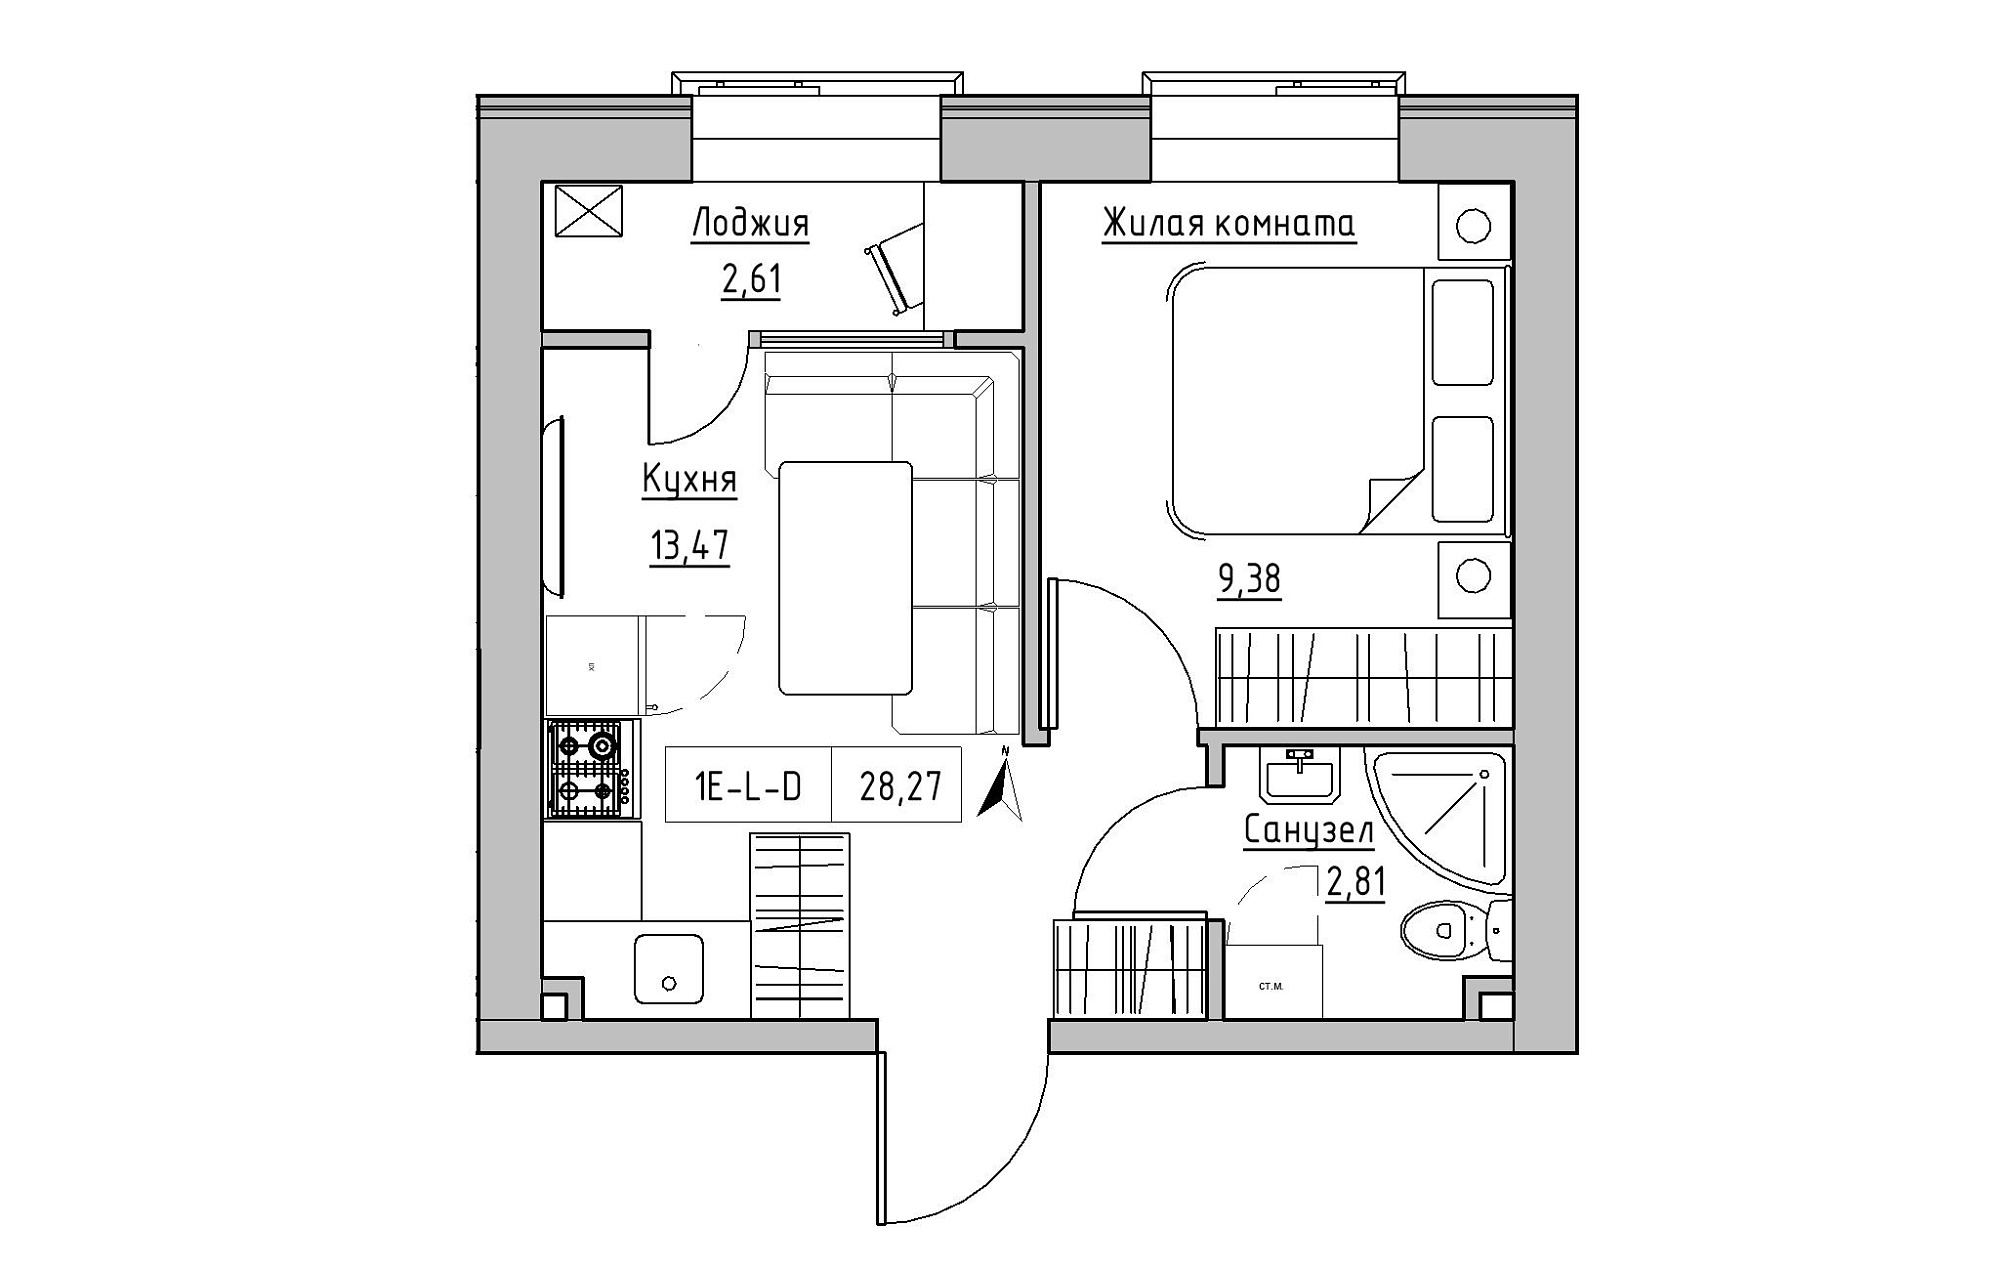 Планировка 1-к квартира площей 28.27м2, KS-019-02/0015.